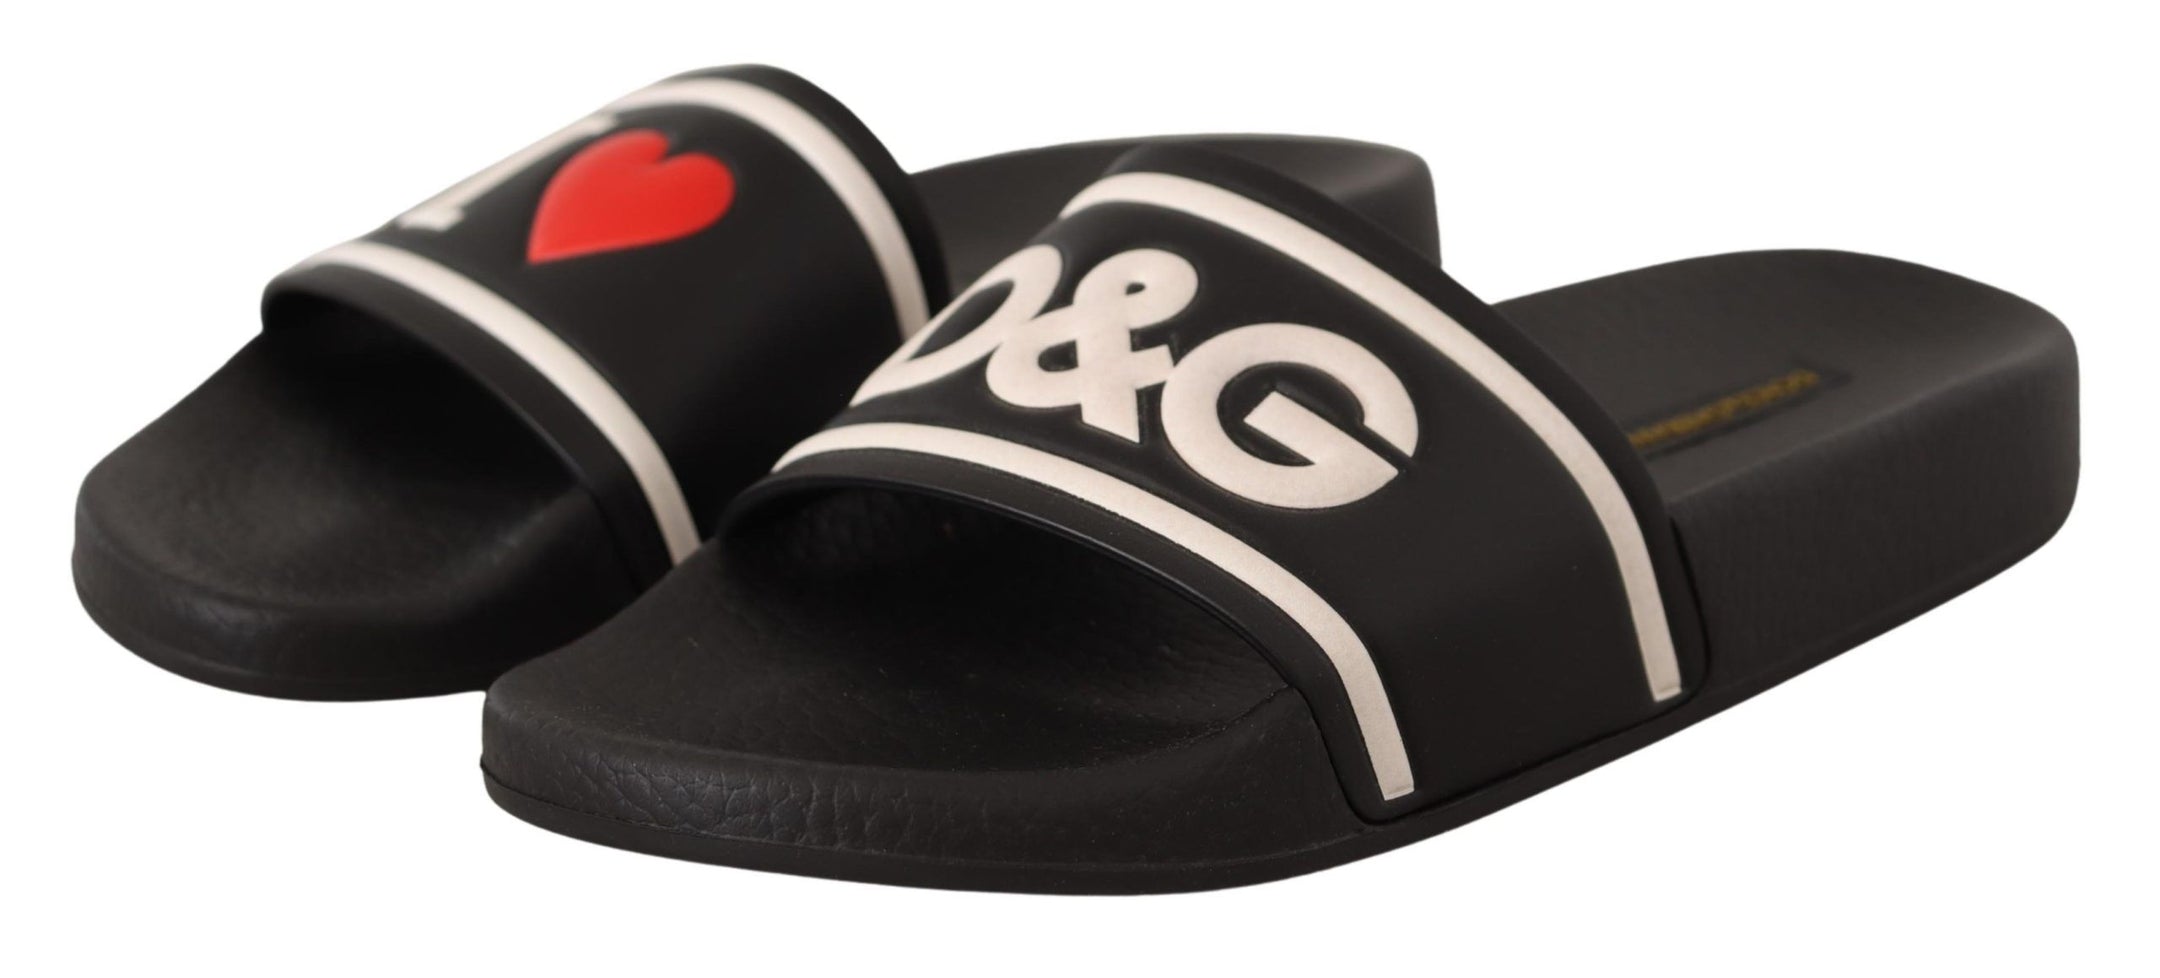 Elegant Black Leather Slide Sandals for Her